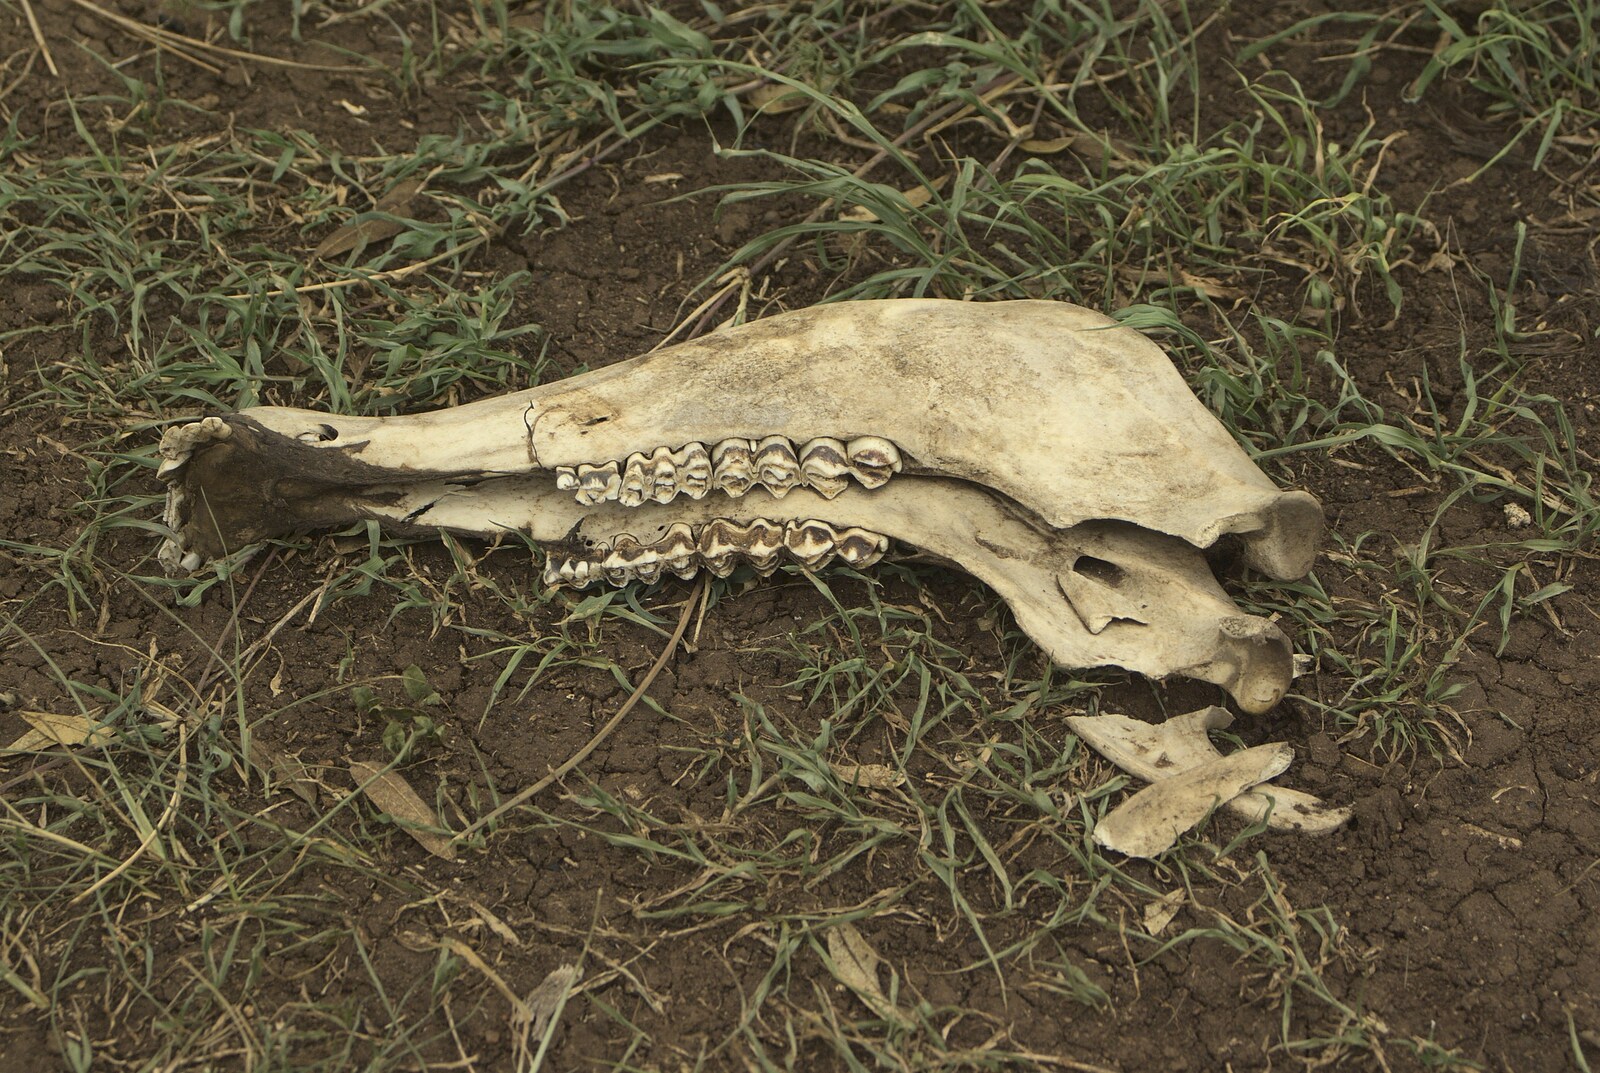 Maasai Mara Safari and a Maasai Village, Ololaimutia, Kenya - 5th November 2010: A ruminant's lower jaw bone